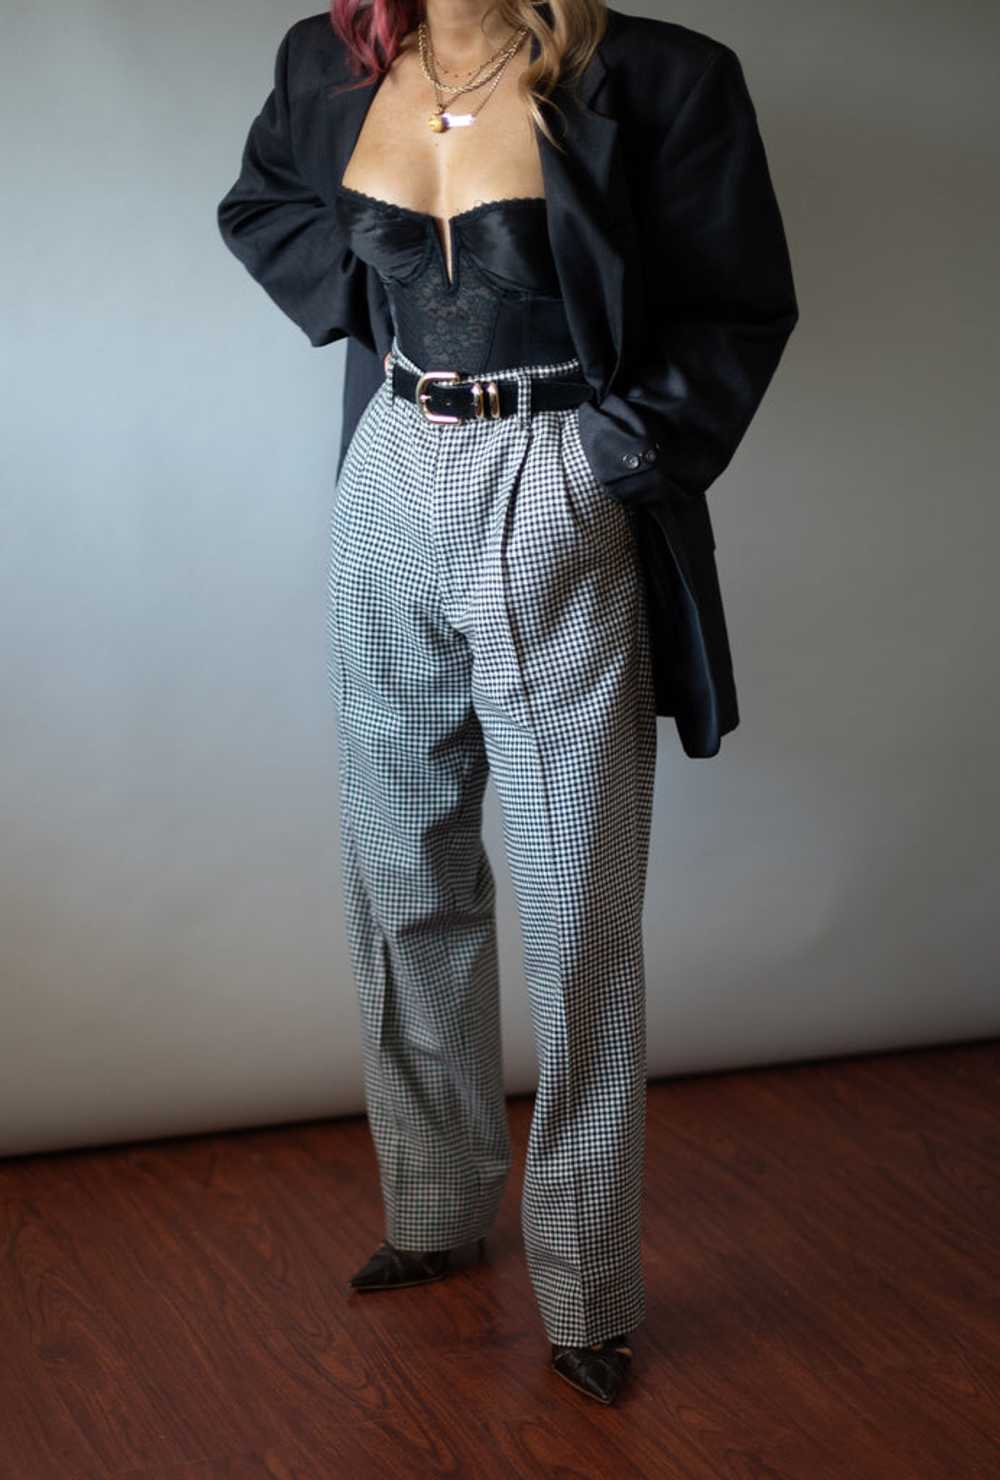 Vintage Oscar De La Renta Wool Blazer (41R) - image 5